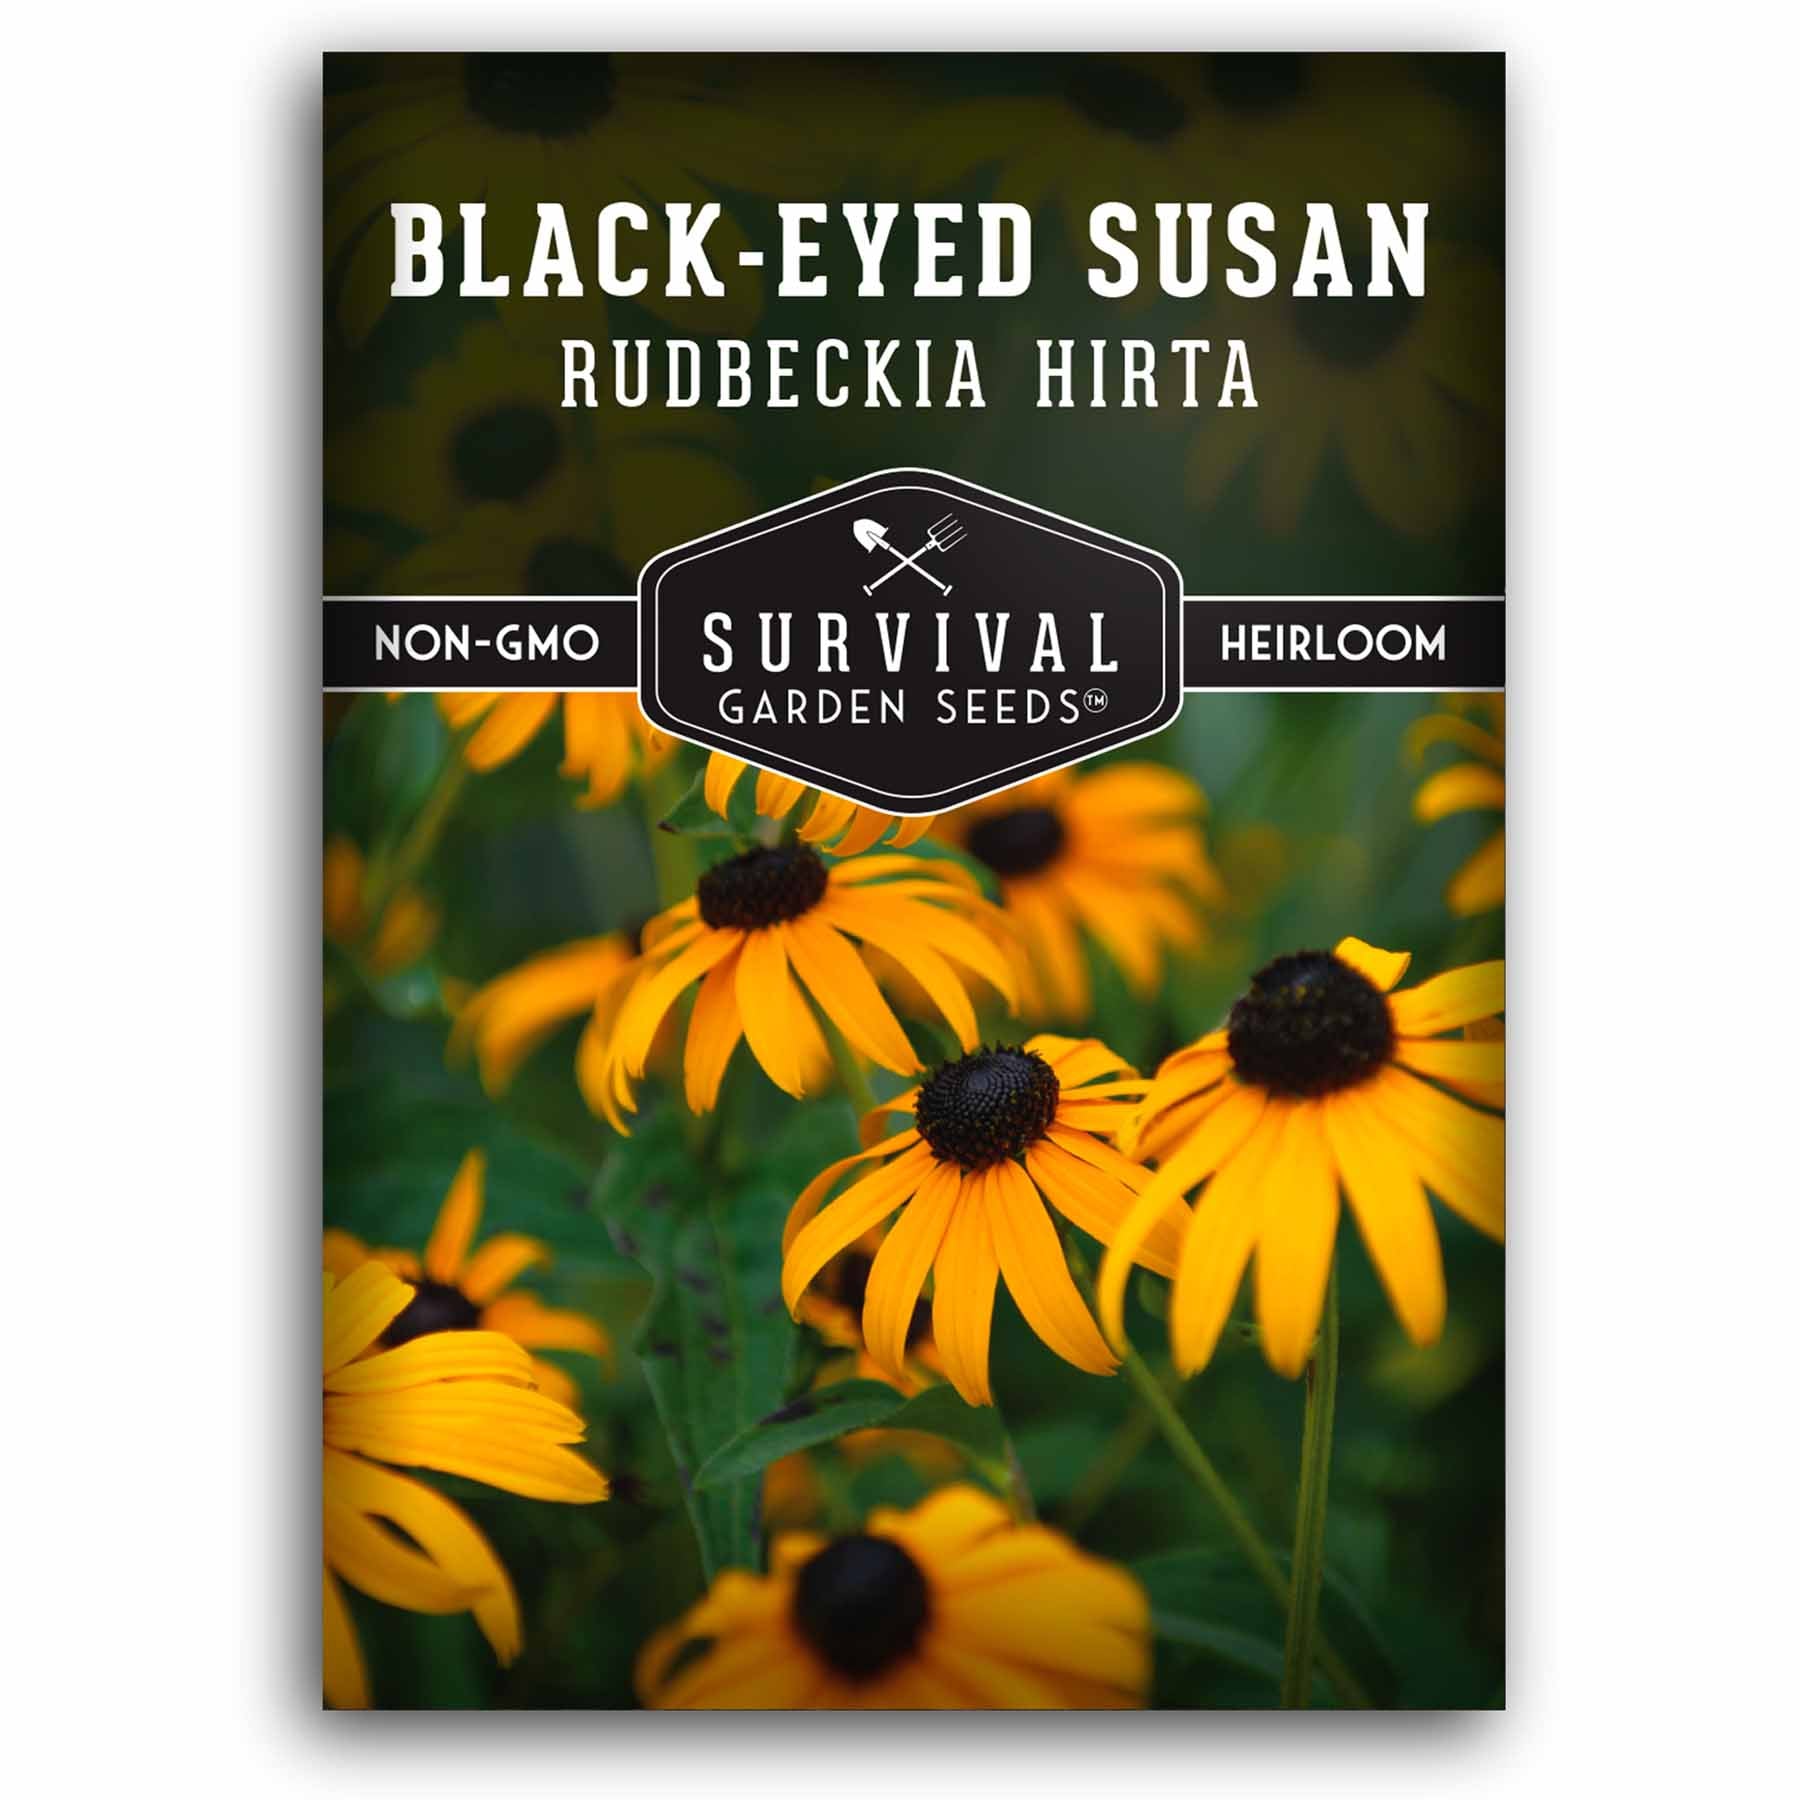 Black-eyed Susan seeds